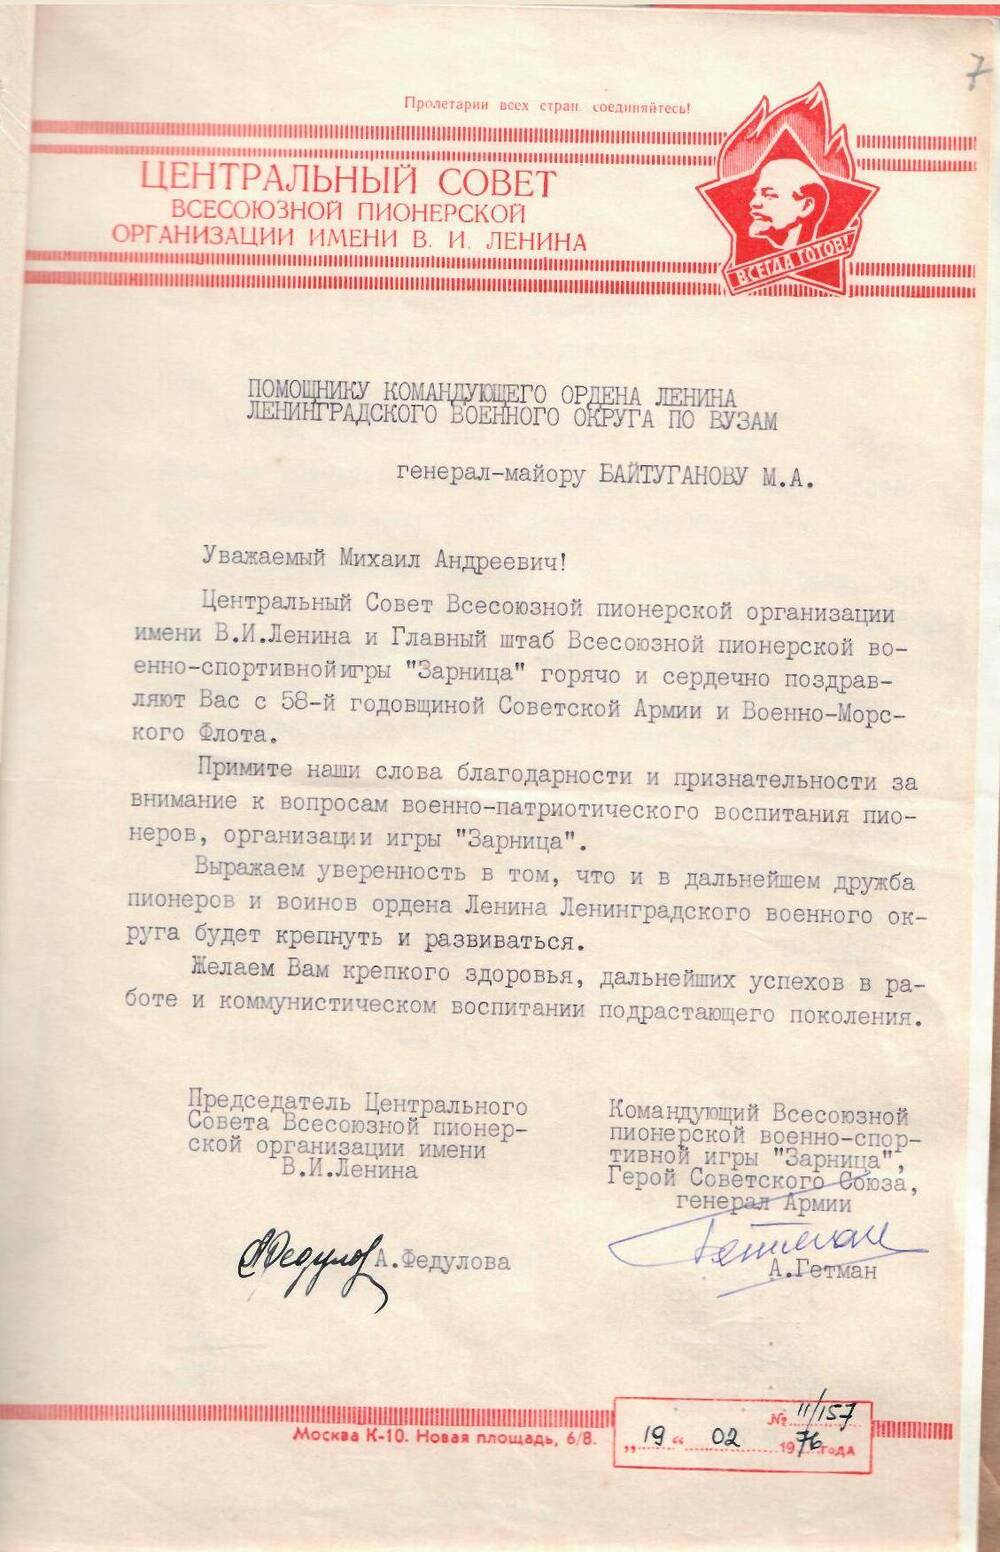 Письмо поздравительное генерал-майору Байтуганову М.А. в связи с 58-й годовщиной Советской Армии и Военно-Морского Флота, 1976.